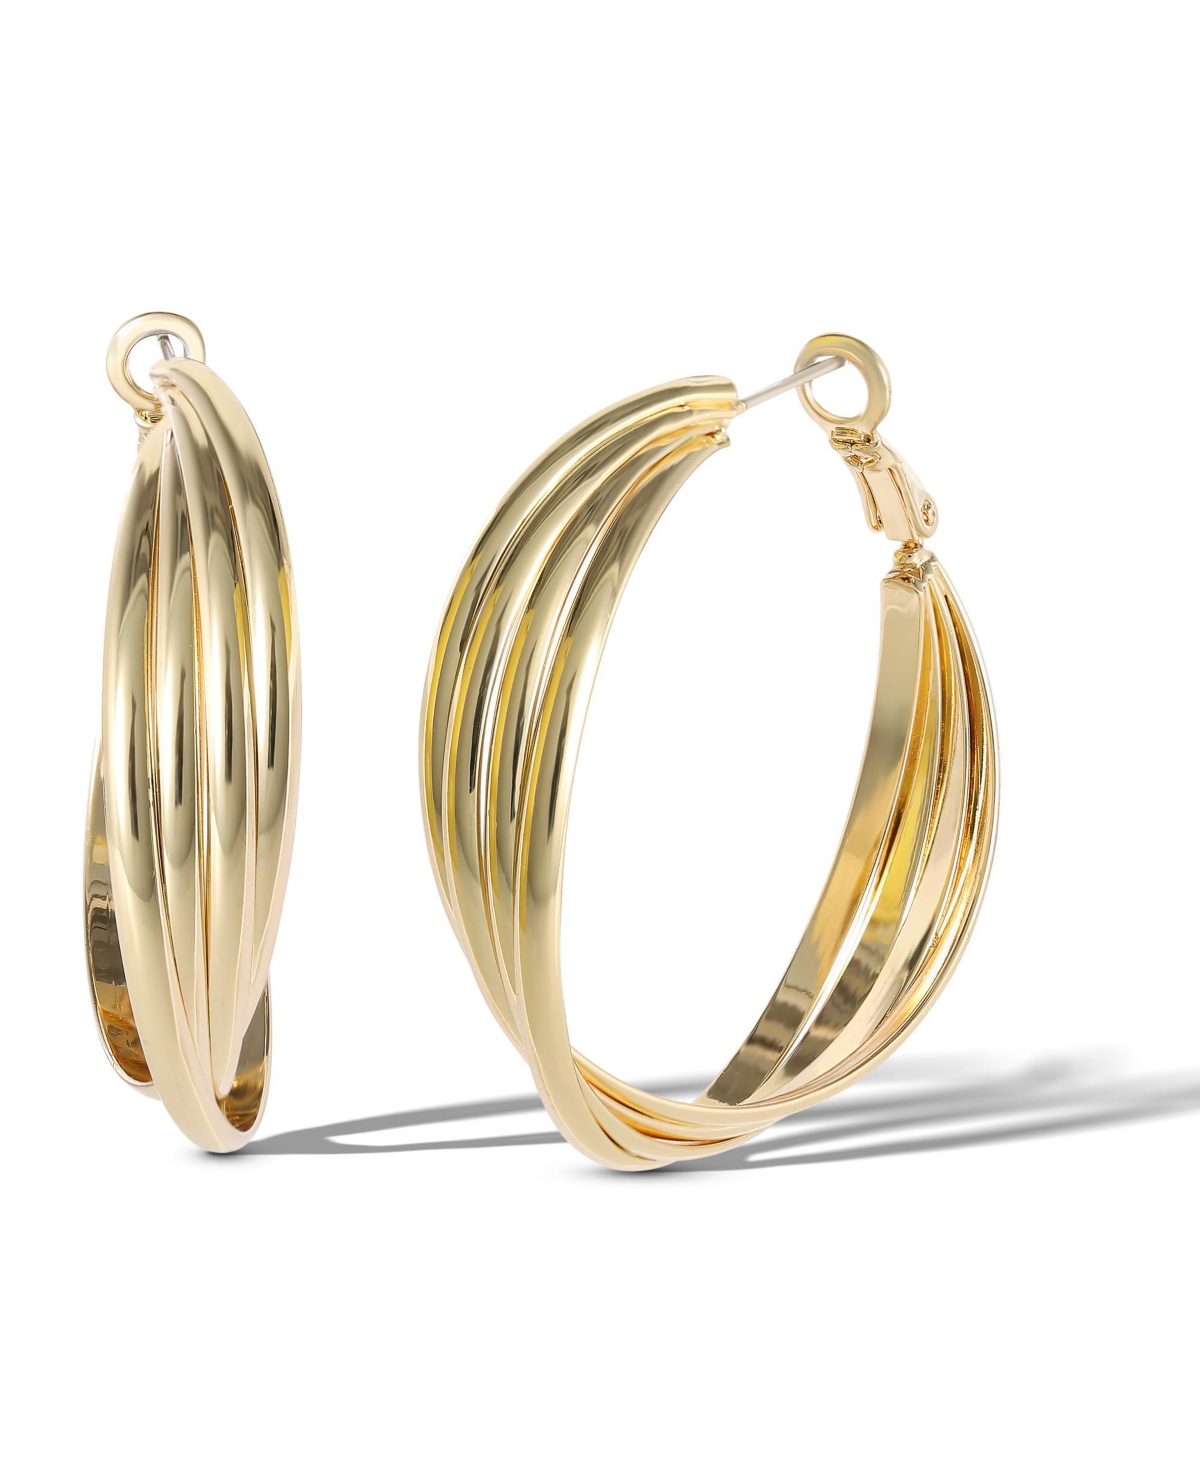 Womens Hoop Earrings Gold or Silver Tone Earrings for Women - Silver